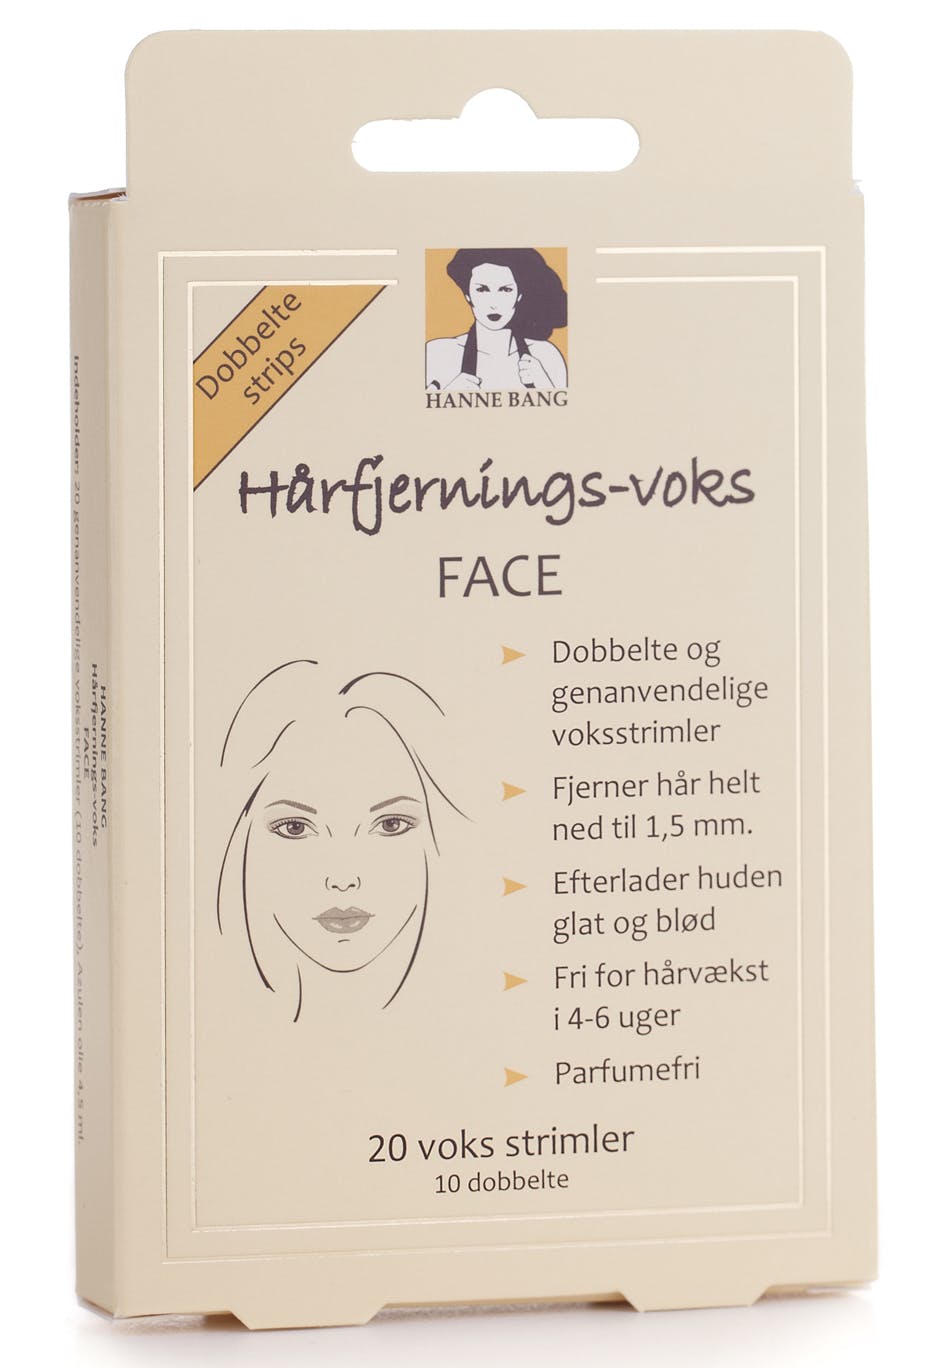 https://imgix.femina.dk/hbc_haarfjernings-voks_face.jpg